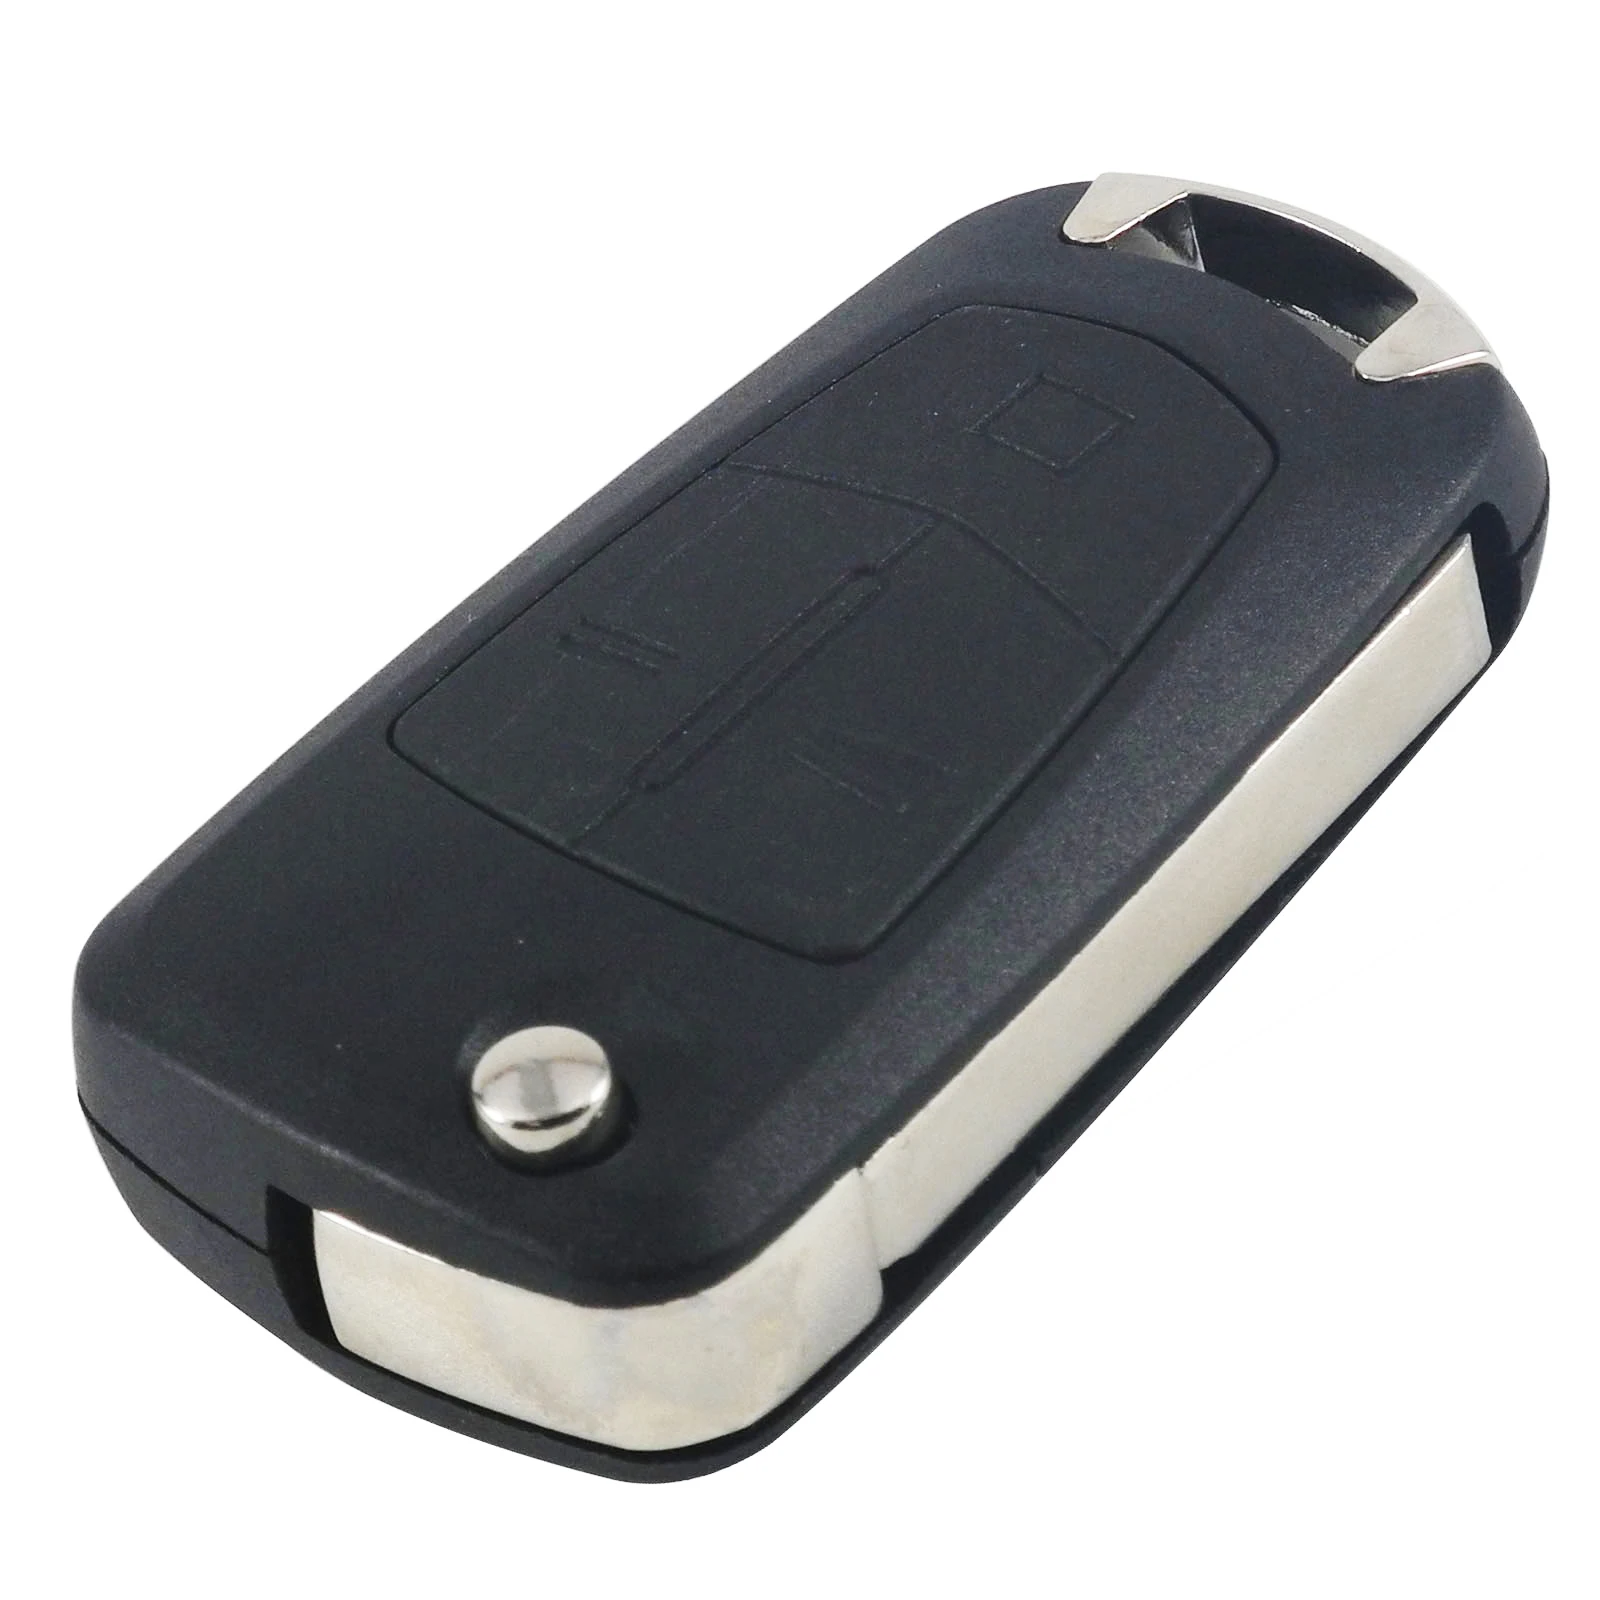 Jingyuqin 2/3 Butoons Uncut Складной флип-чехол для дистанционного ключа в виде ракушки Fob для Vauxhall/Opel/Astra H/Corsa D/Vectra C/Zafira - Количество кнопок: 3 Кнопки